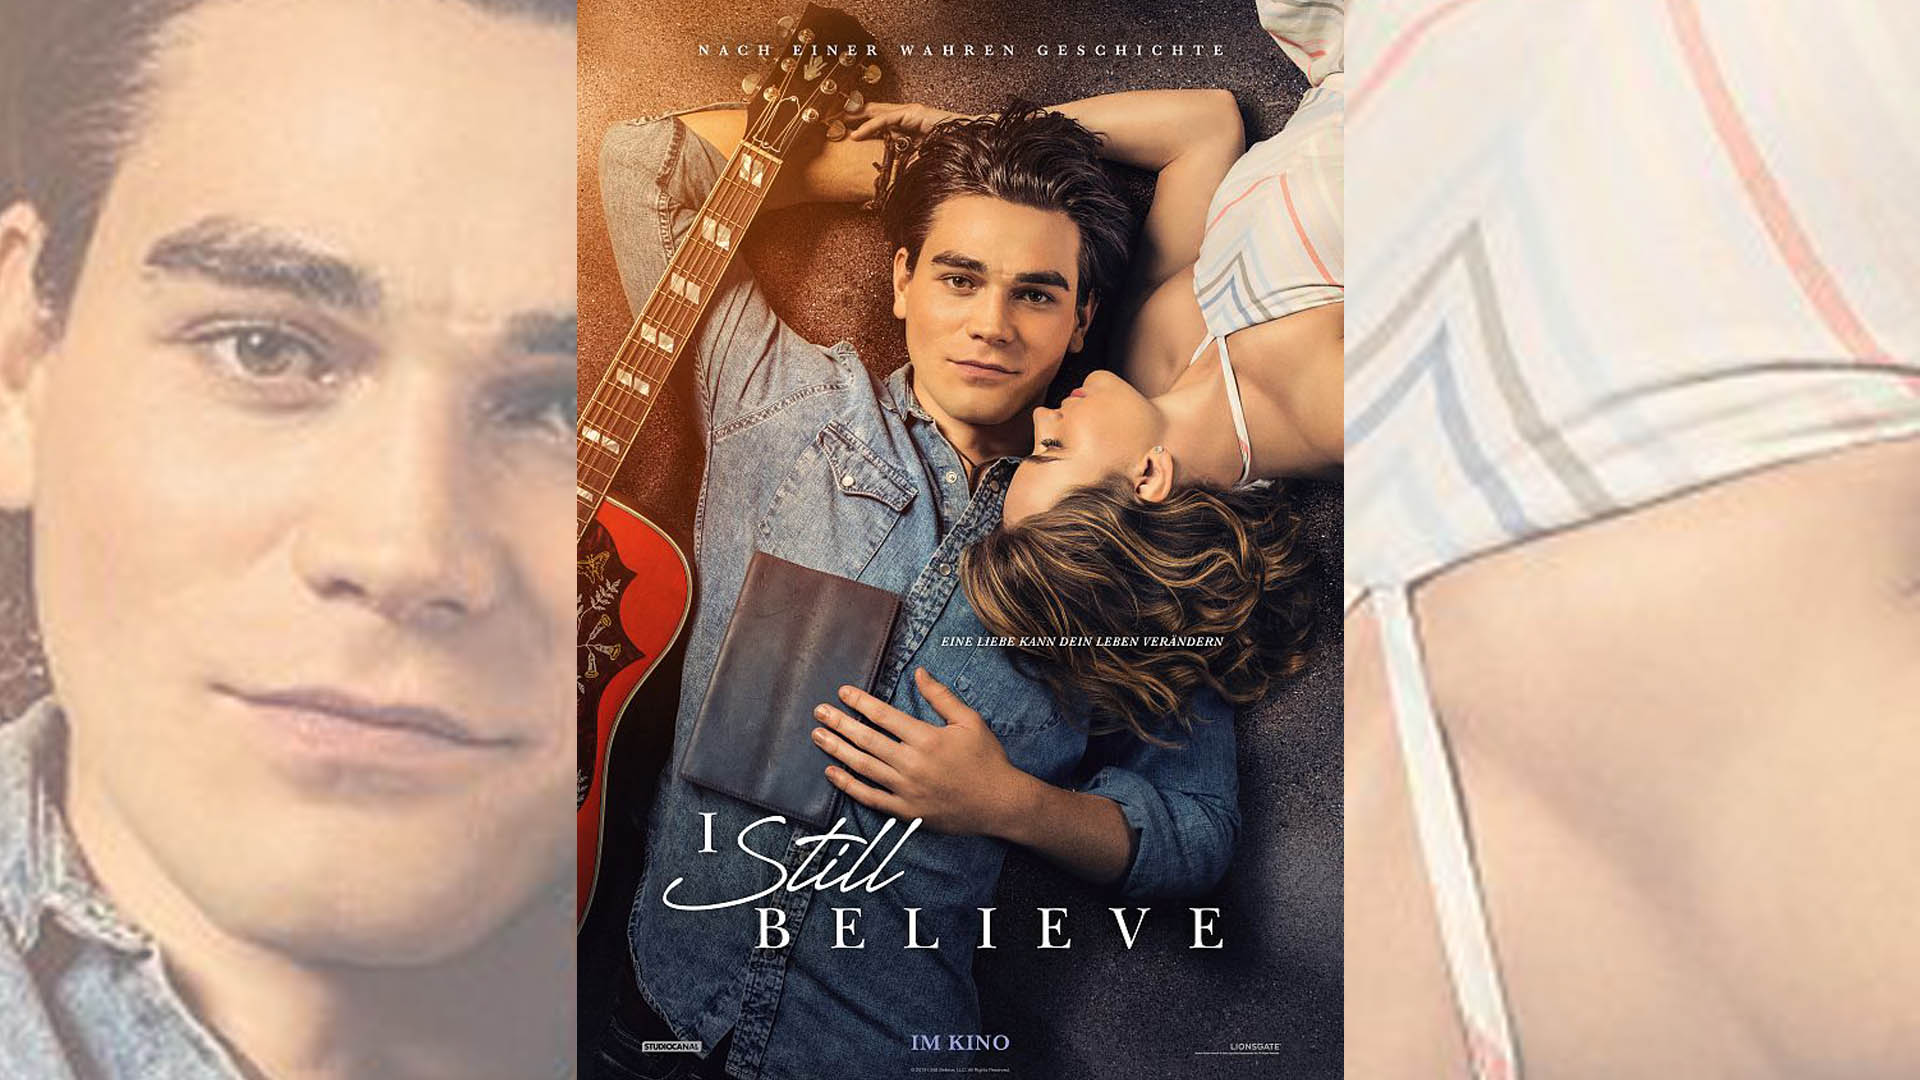 Ein christlicher Musiker, aber wenig christliche Botschaft: Das amerikanische Drama „I still believe“ läuft am 13. August 2020 in deutschen Kinos an.